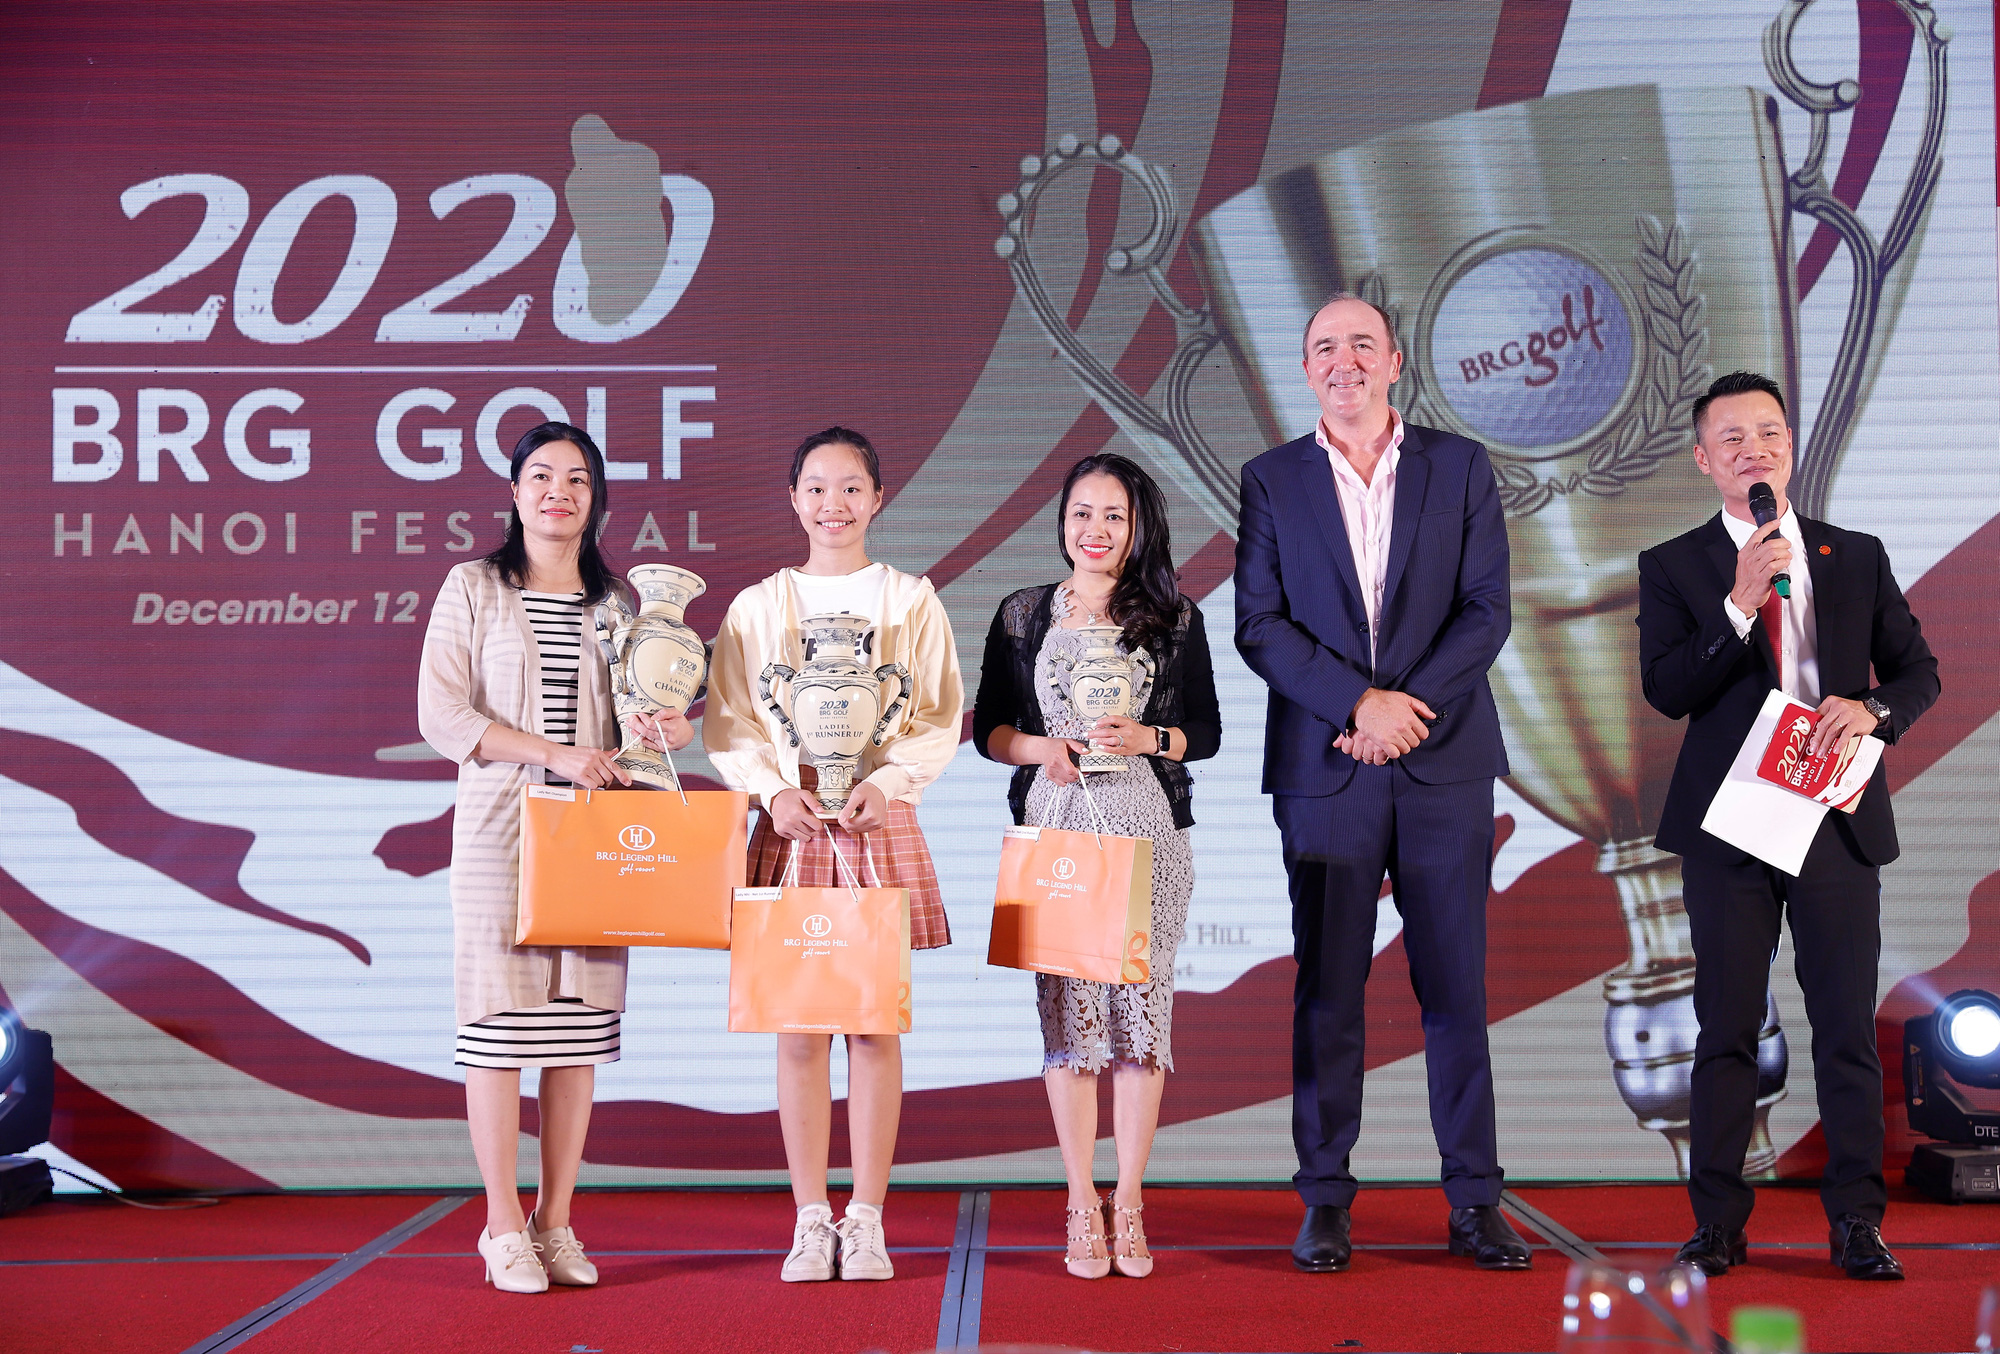 Giải BRG Golf Hanoi Festival 2020 với tình yêu thể thao  - Ảnh 4.